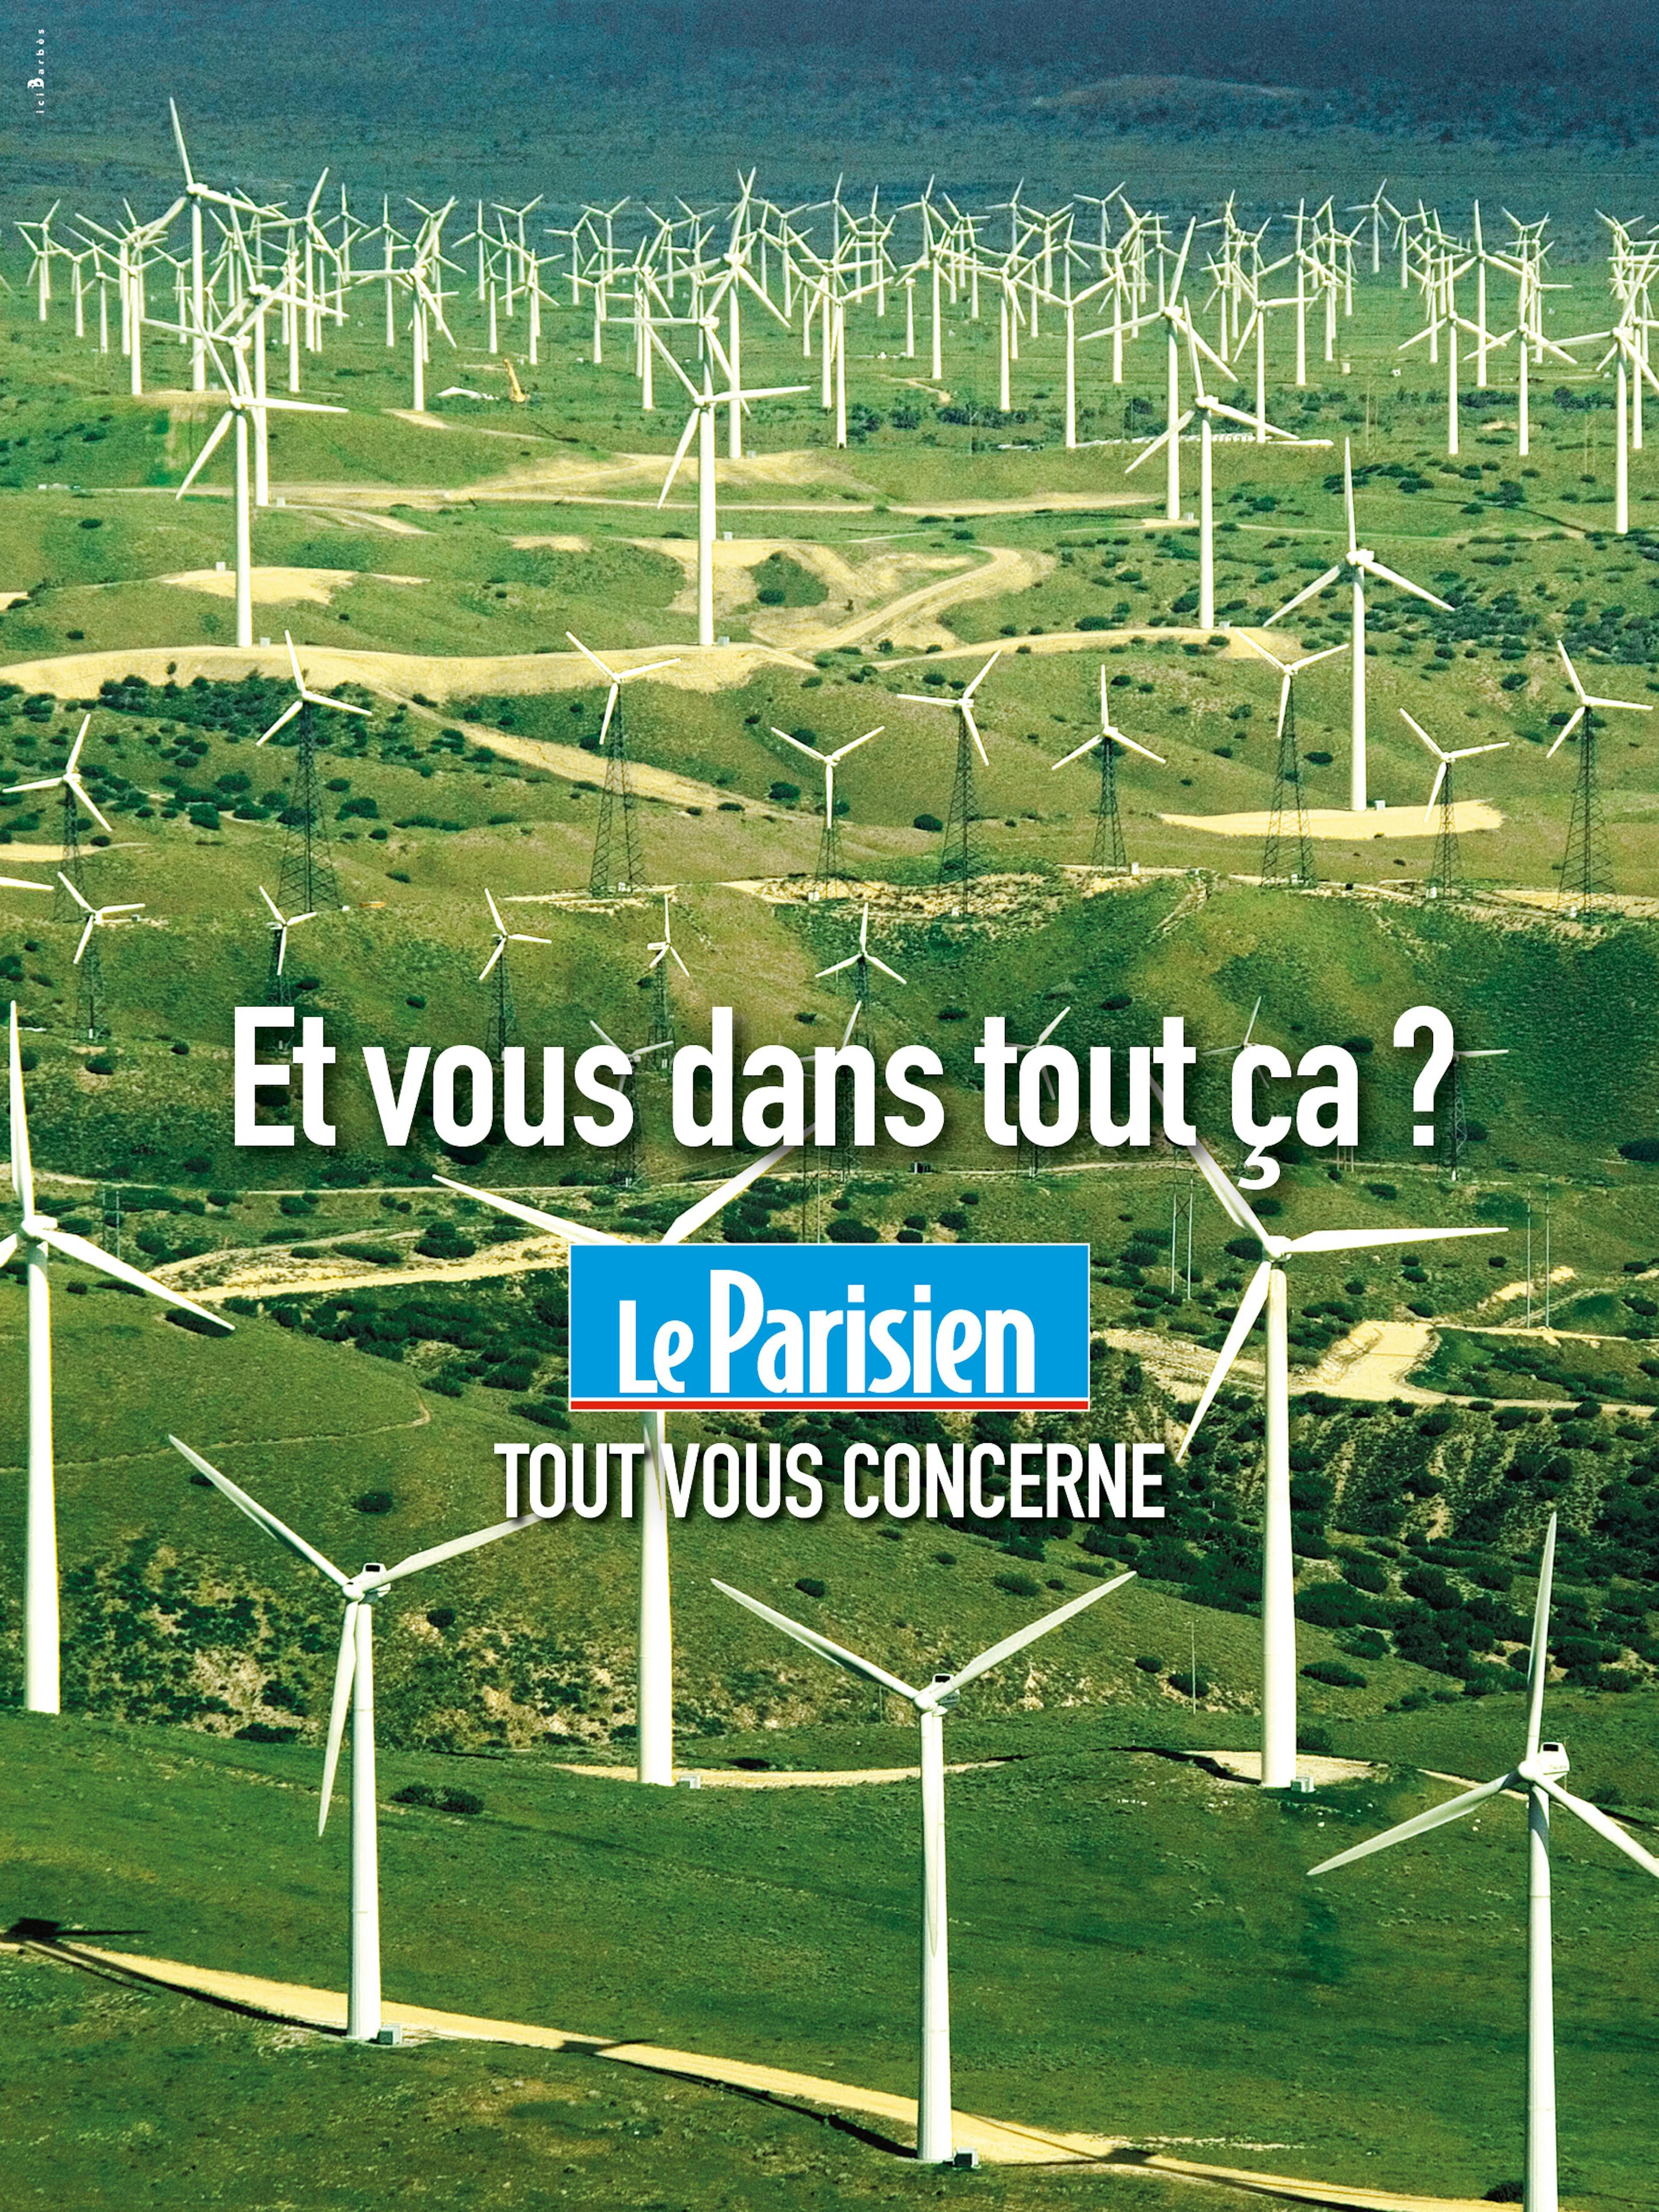 Le Parisien ad campaign © Le Parisien